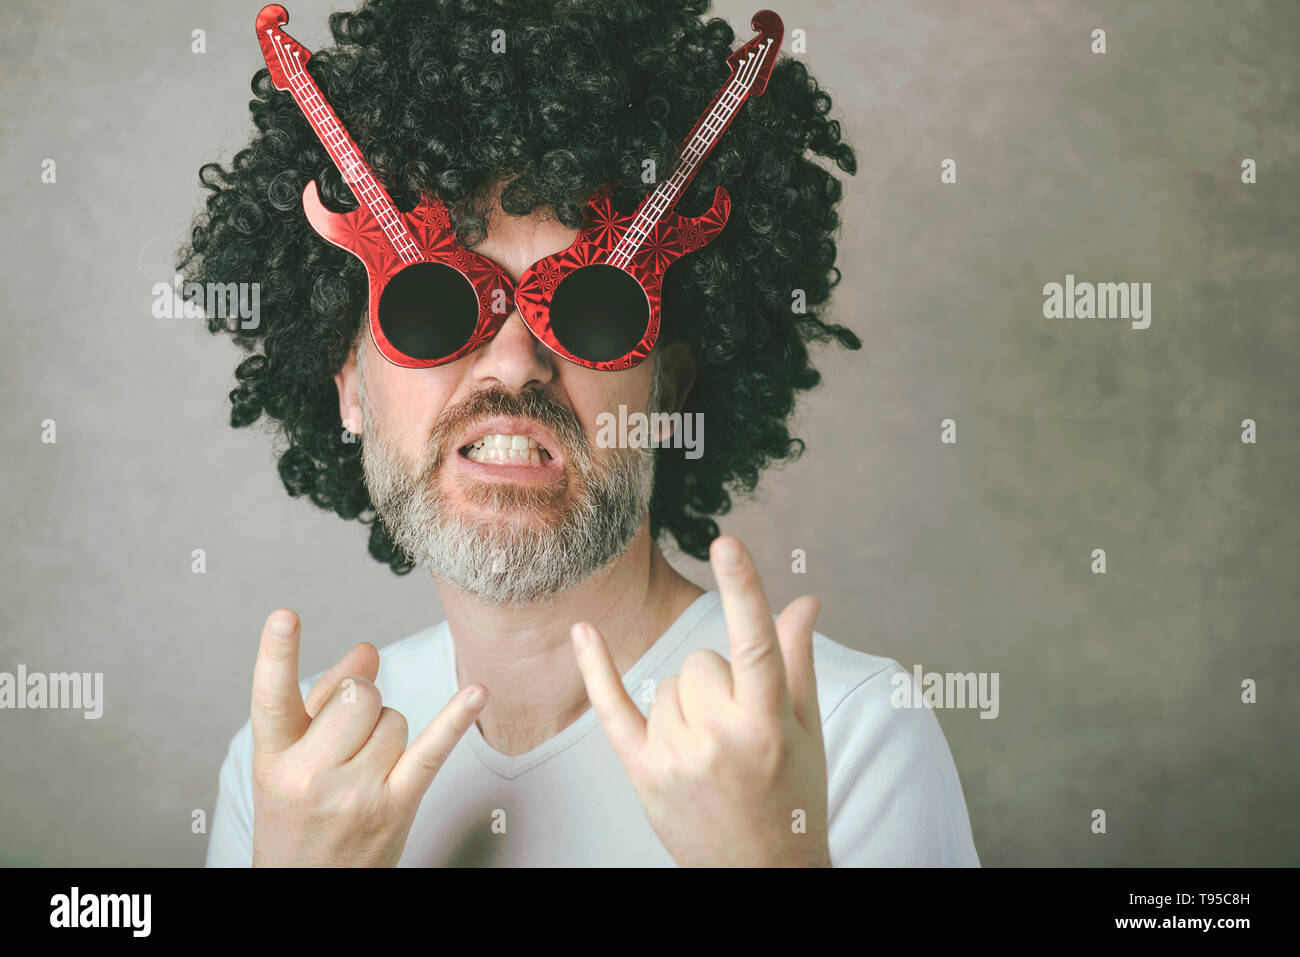 Funny man with sunglasses faisant symbole rock avec les mains jusqu'à l'arrière-plan gris Banque D'Images